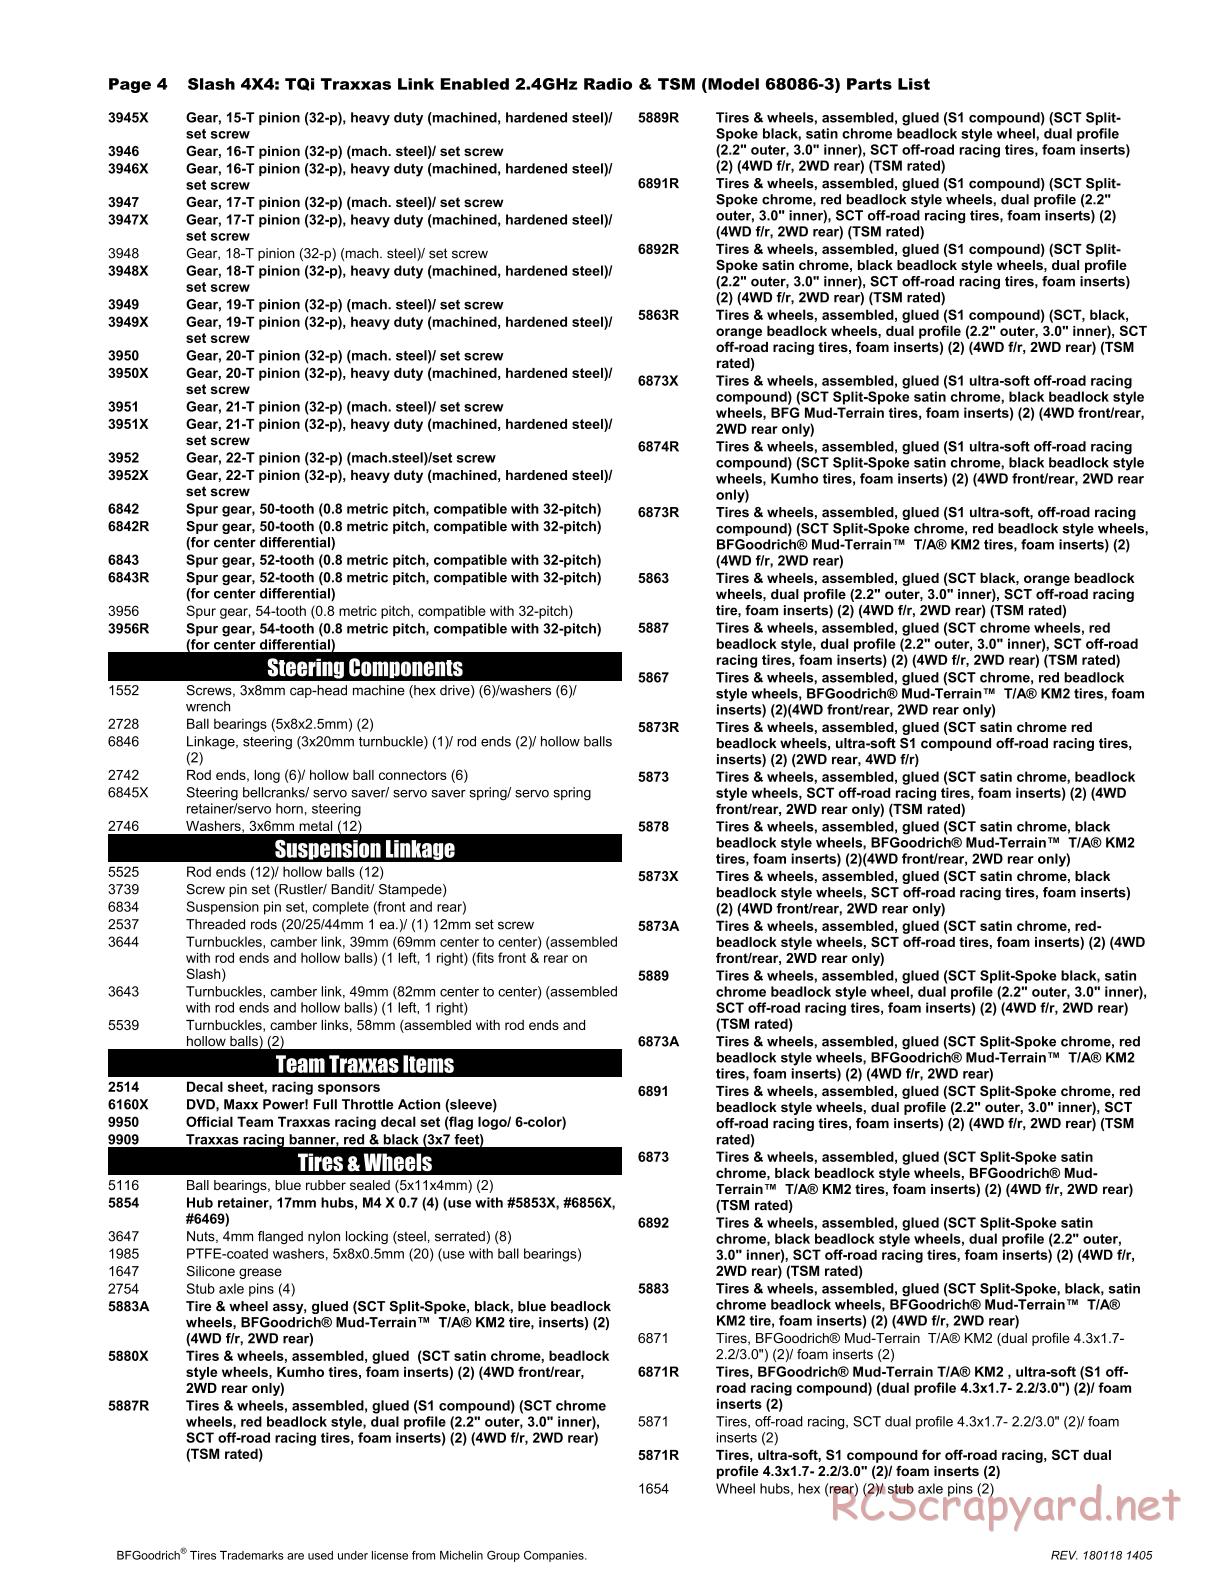 Traxxas - Slash 4x4 TSM (2015) - Parts List - Page 4